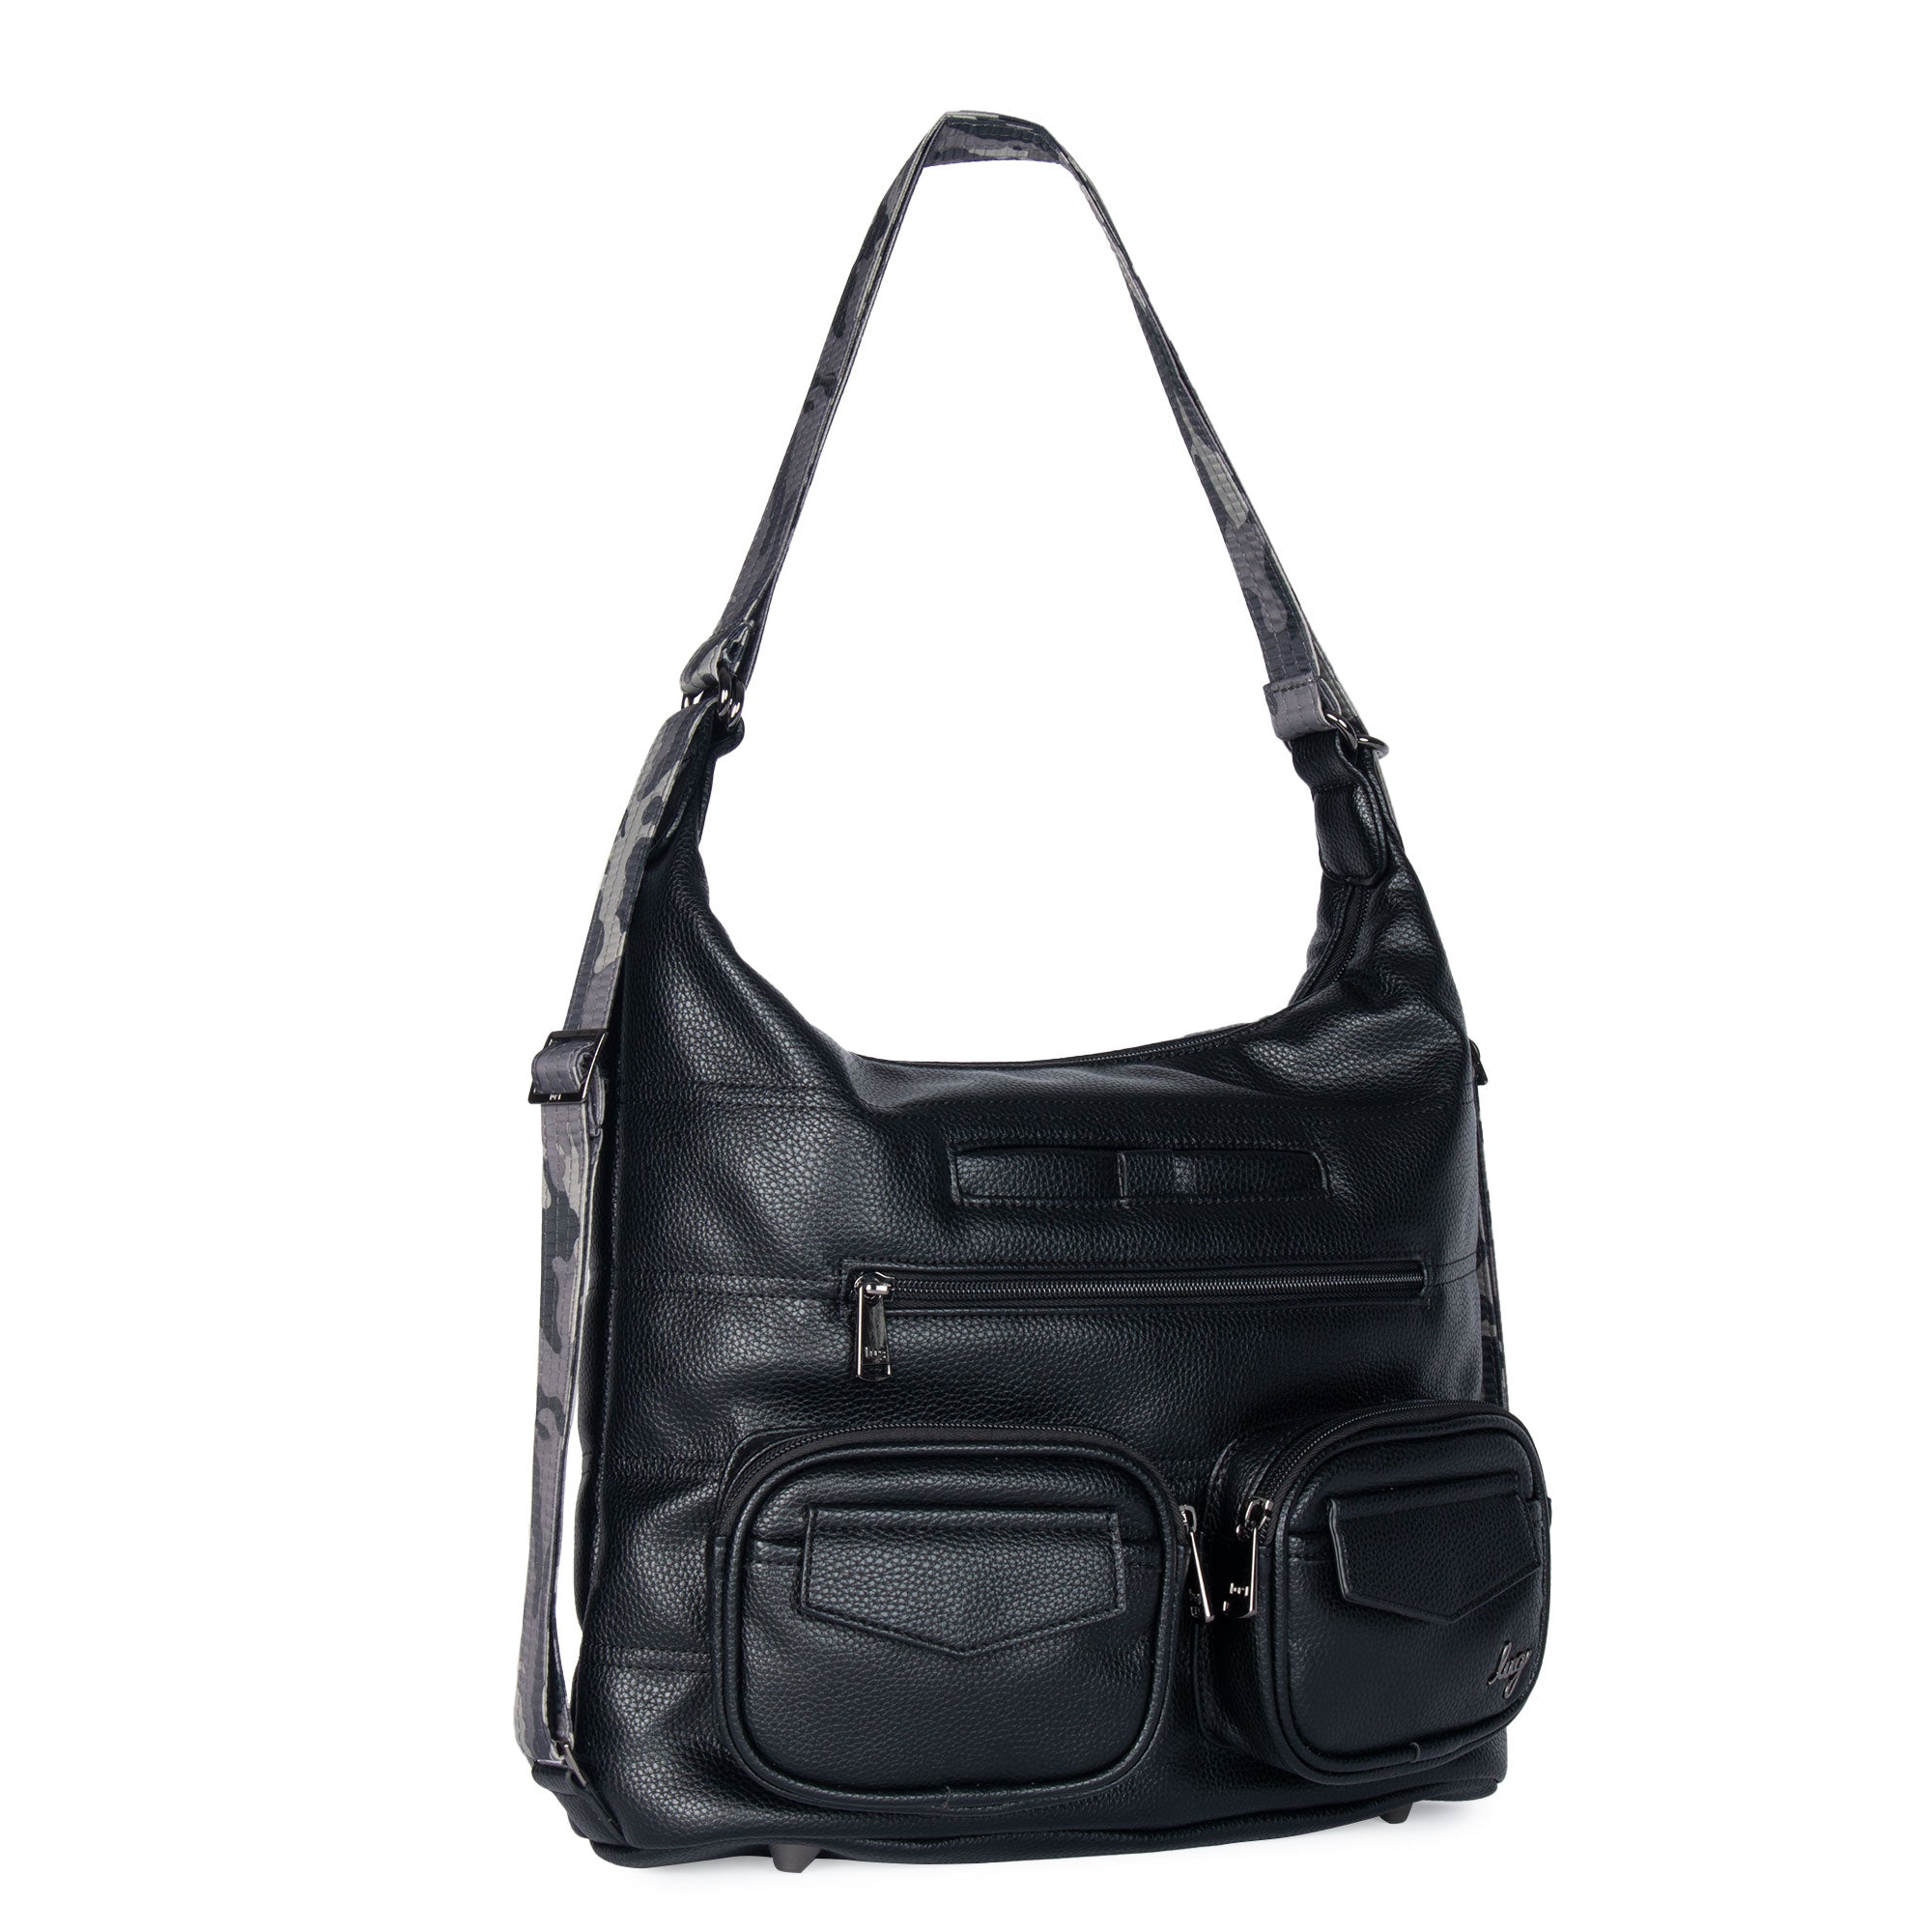 Zipliner VL Convertible Shoulder Bag/Backpack- Vegan Leather Black